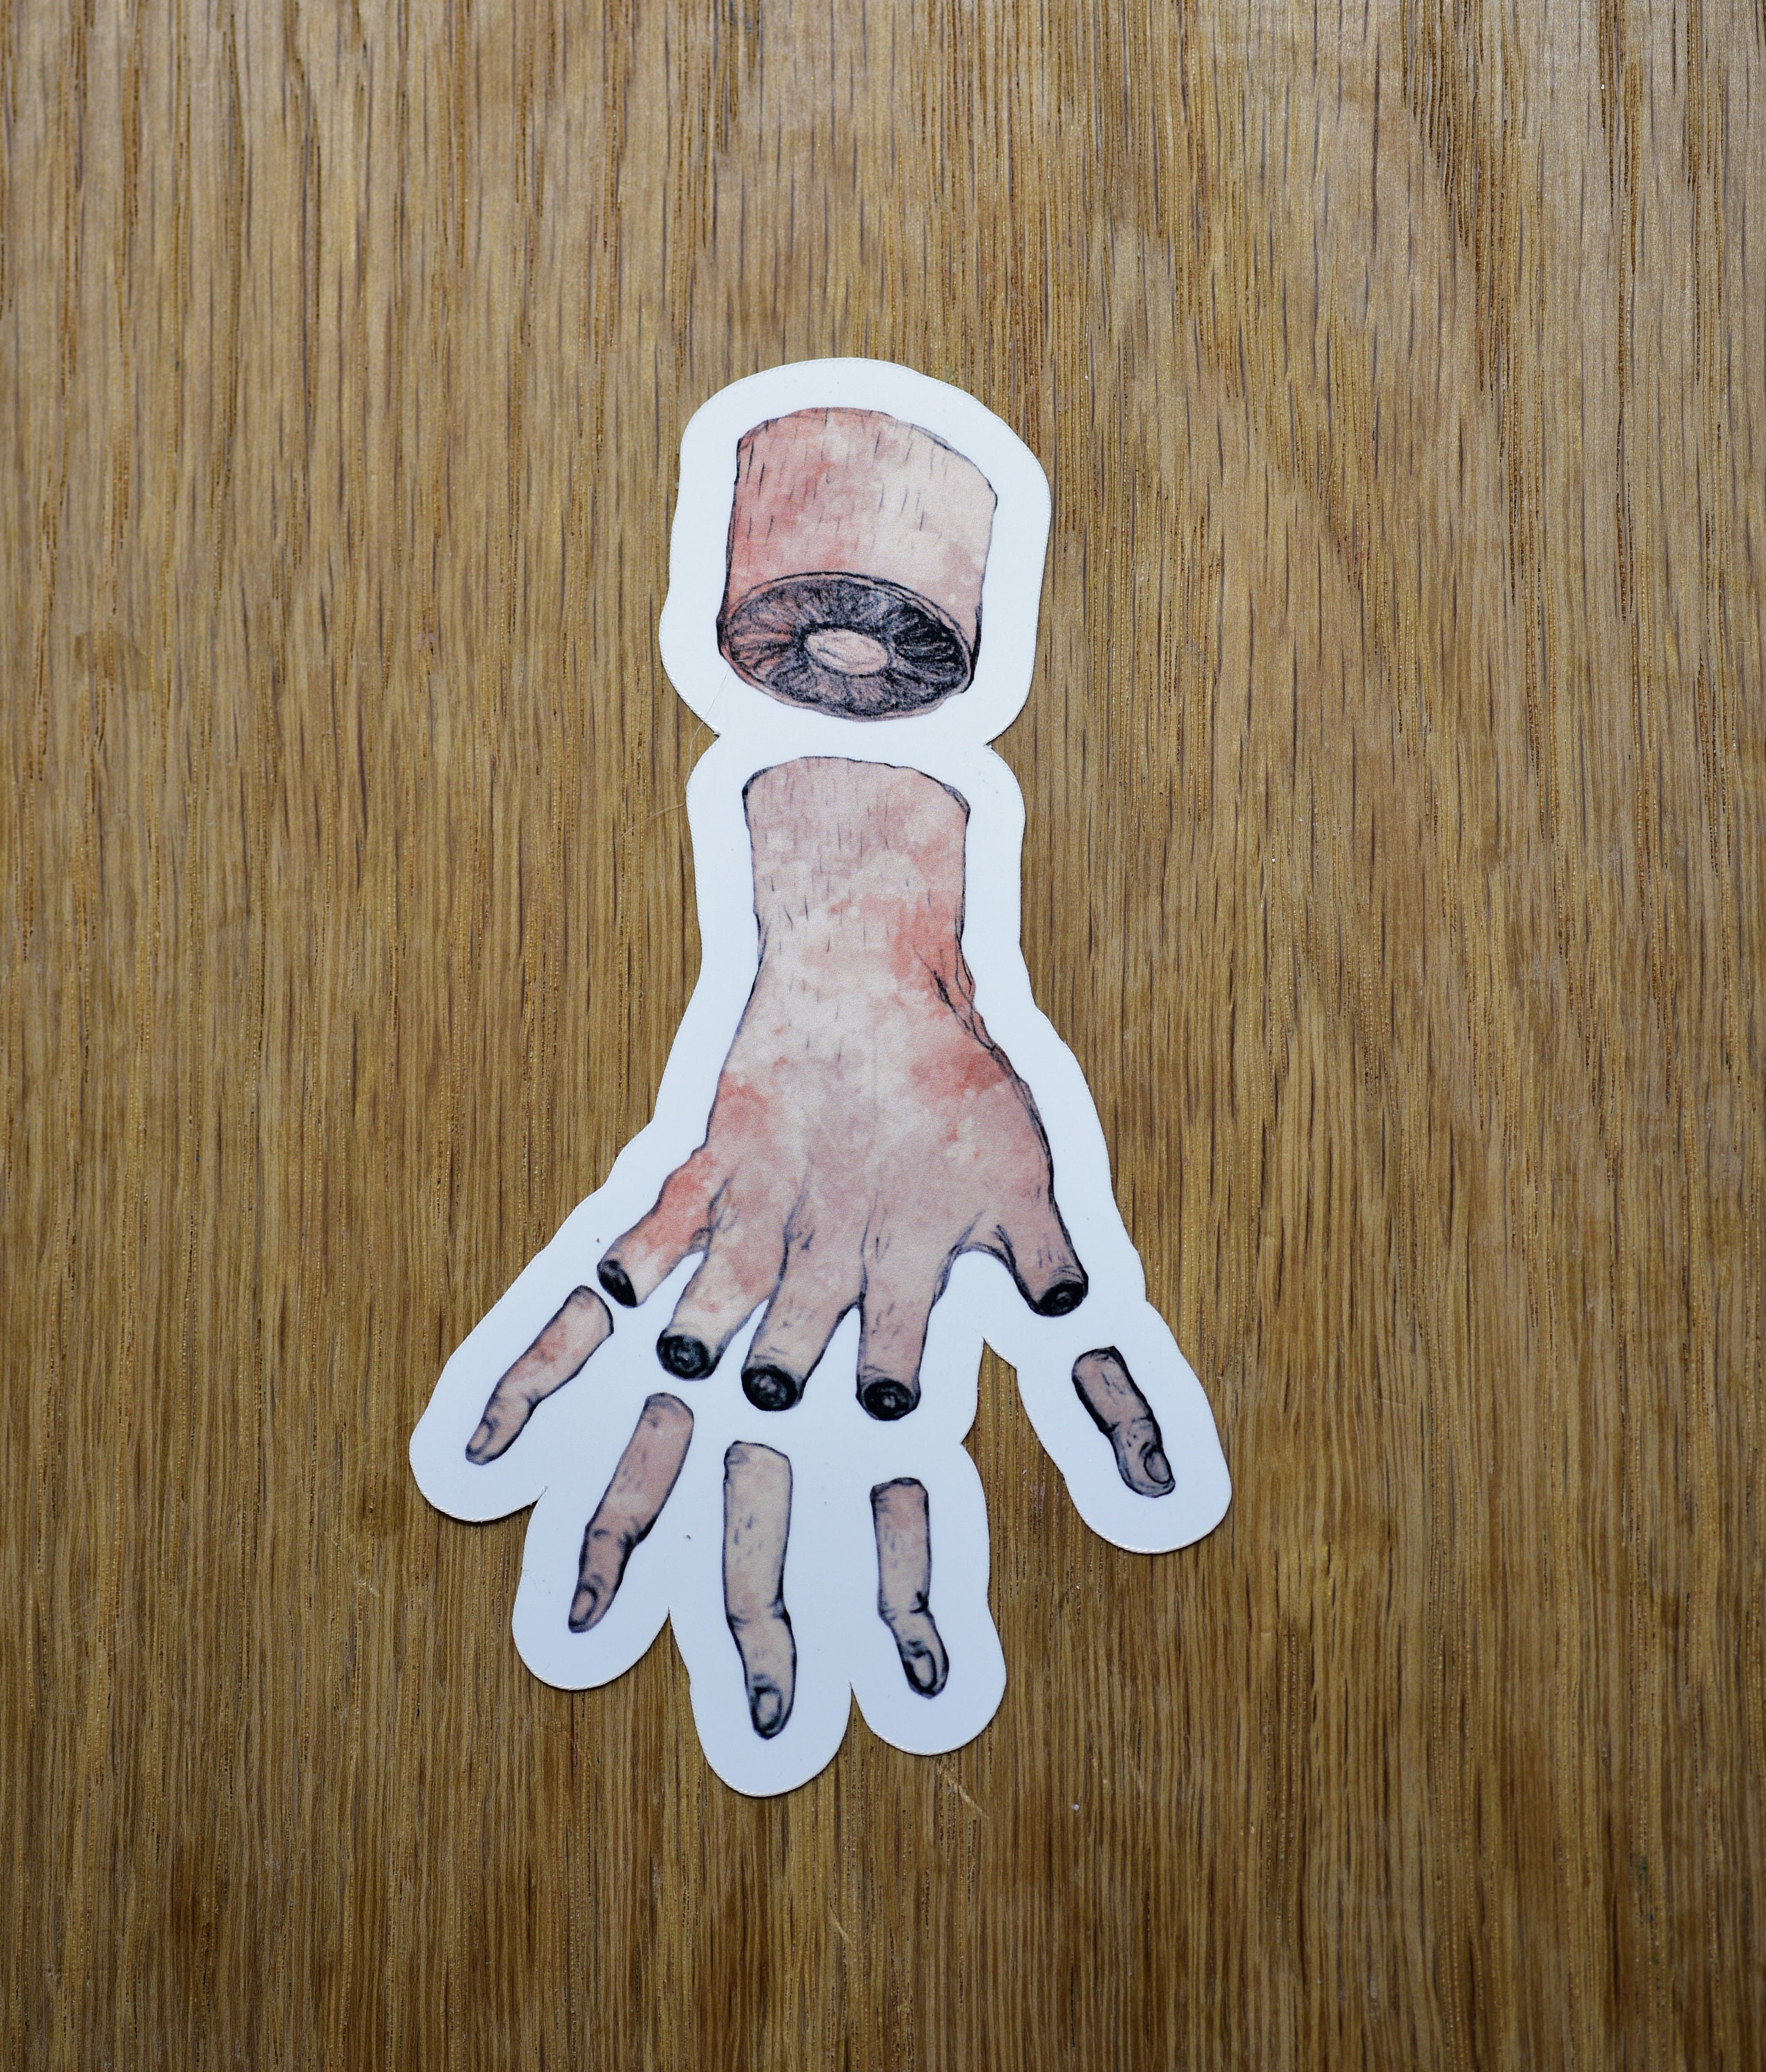 Severed Wrist And Severed Fingers Vinyl Sticker Horror Etsy